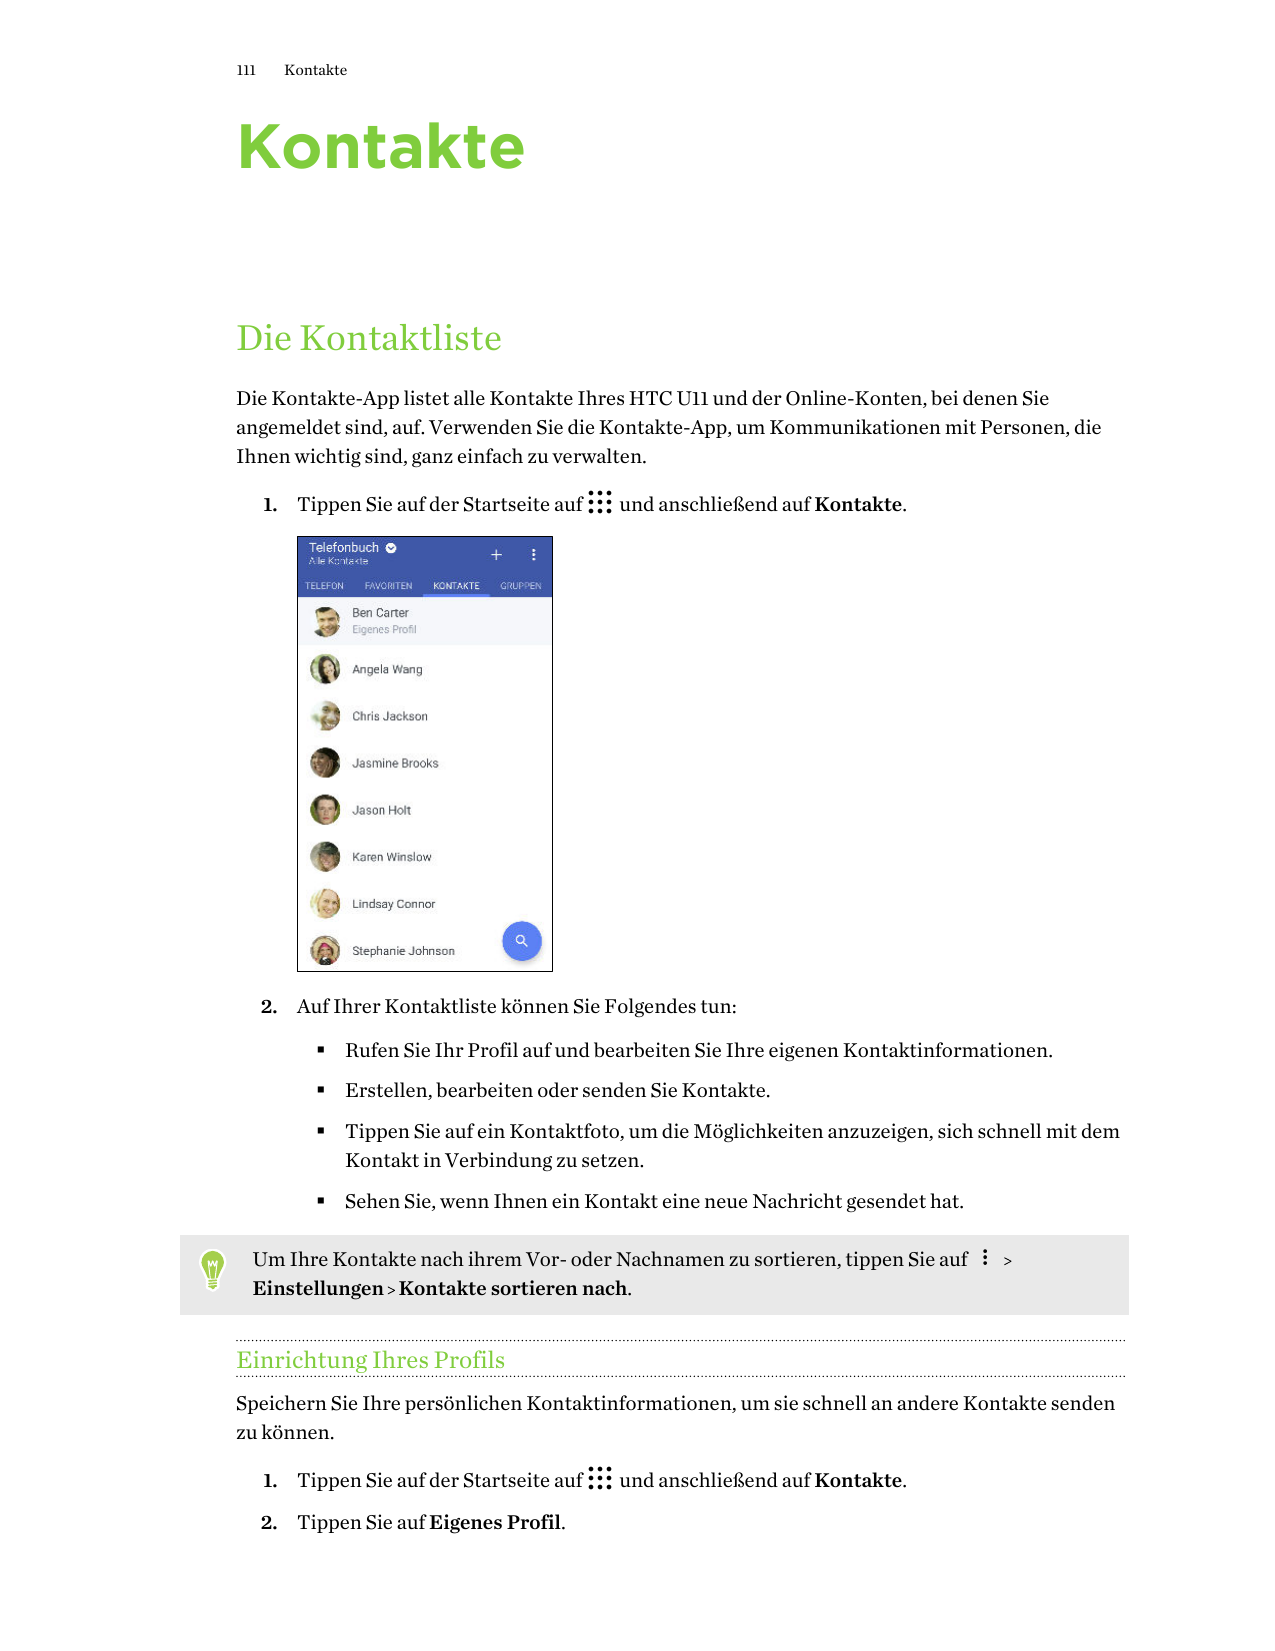 111KontakteKontakteDie KontaktlisteDie Kontakte-App listet alle Kontakte Ihres HTC U11 und der Online-Konten, bei denen Sieangem